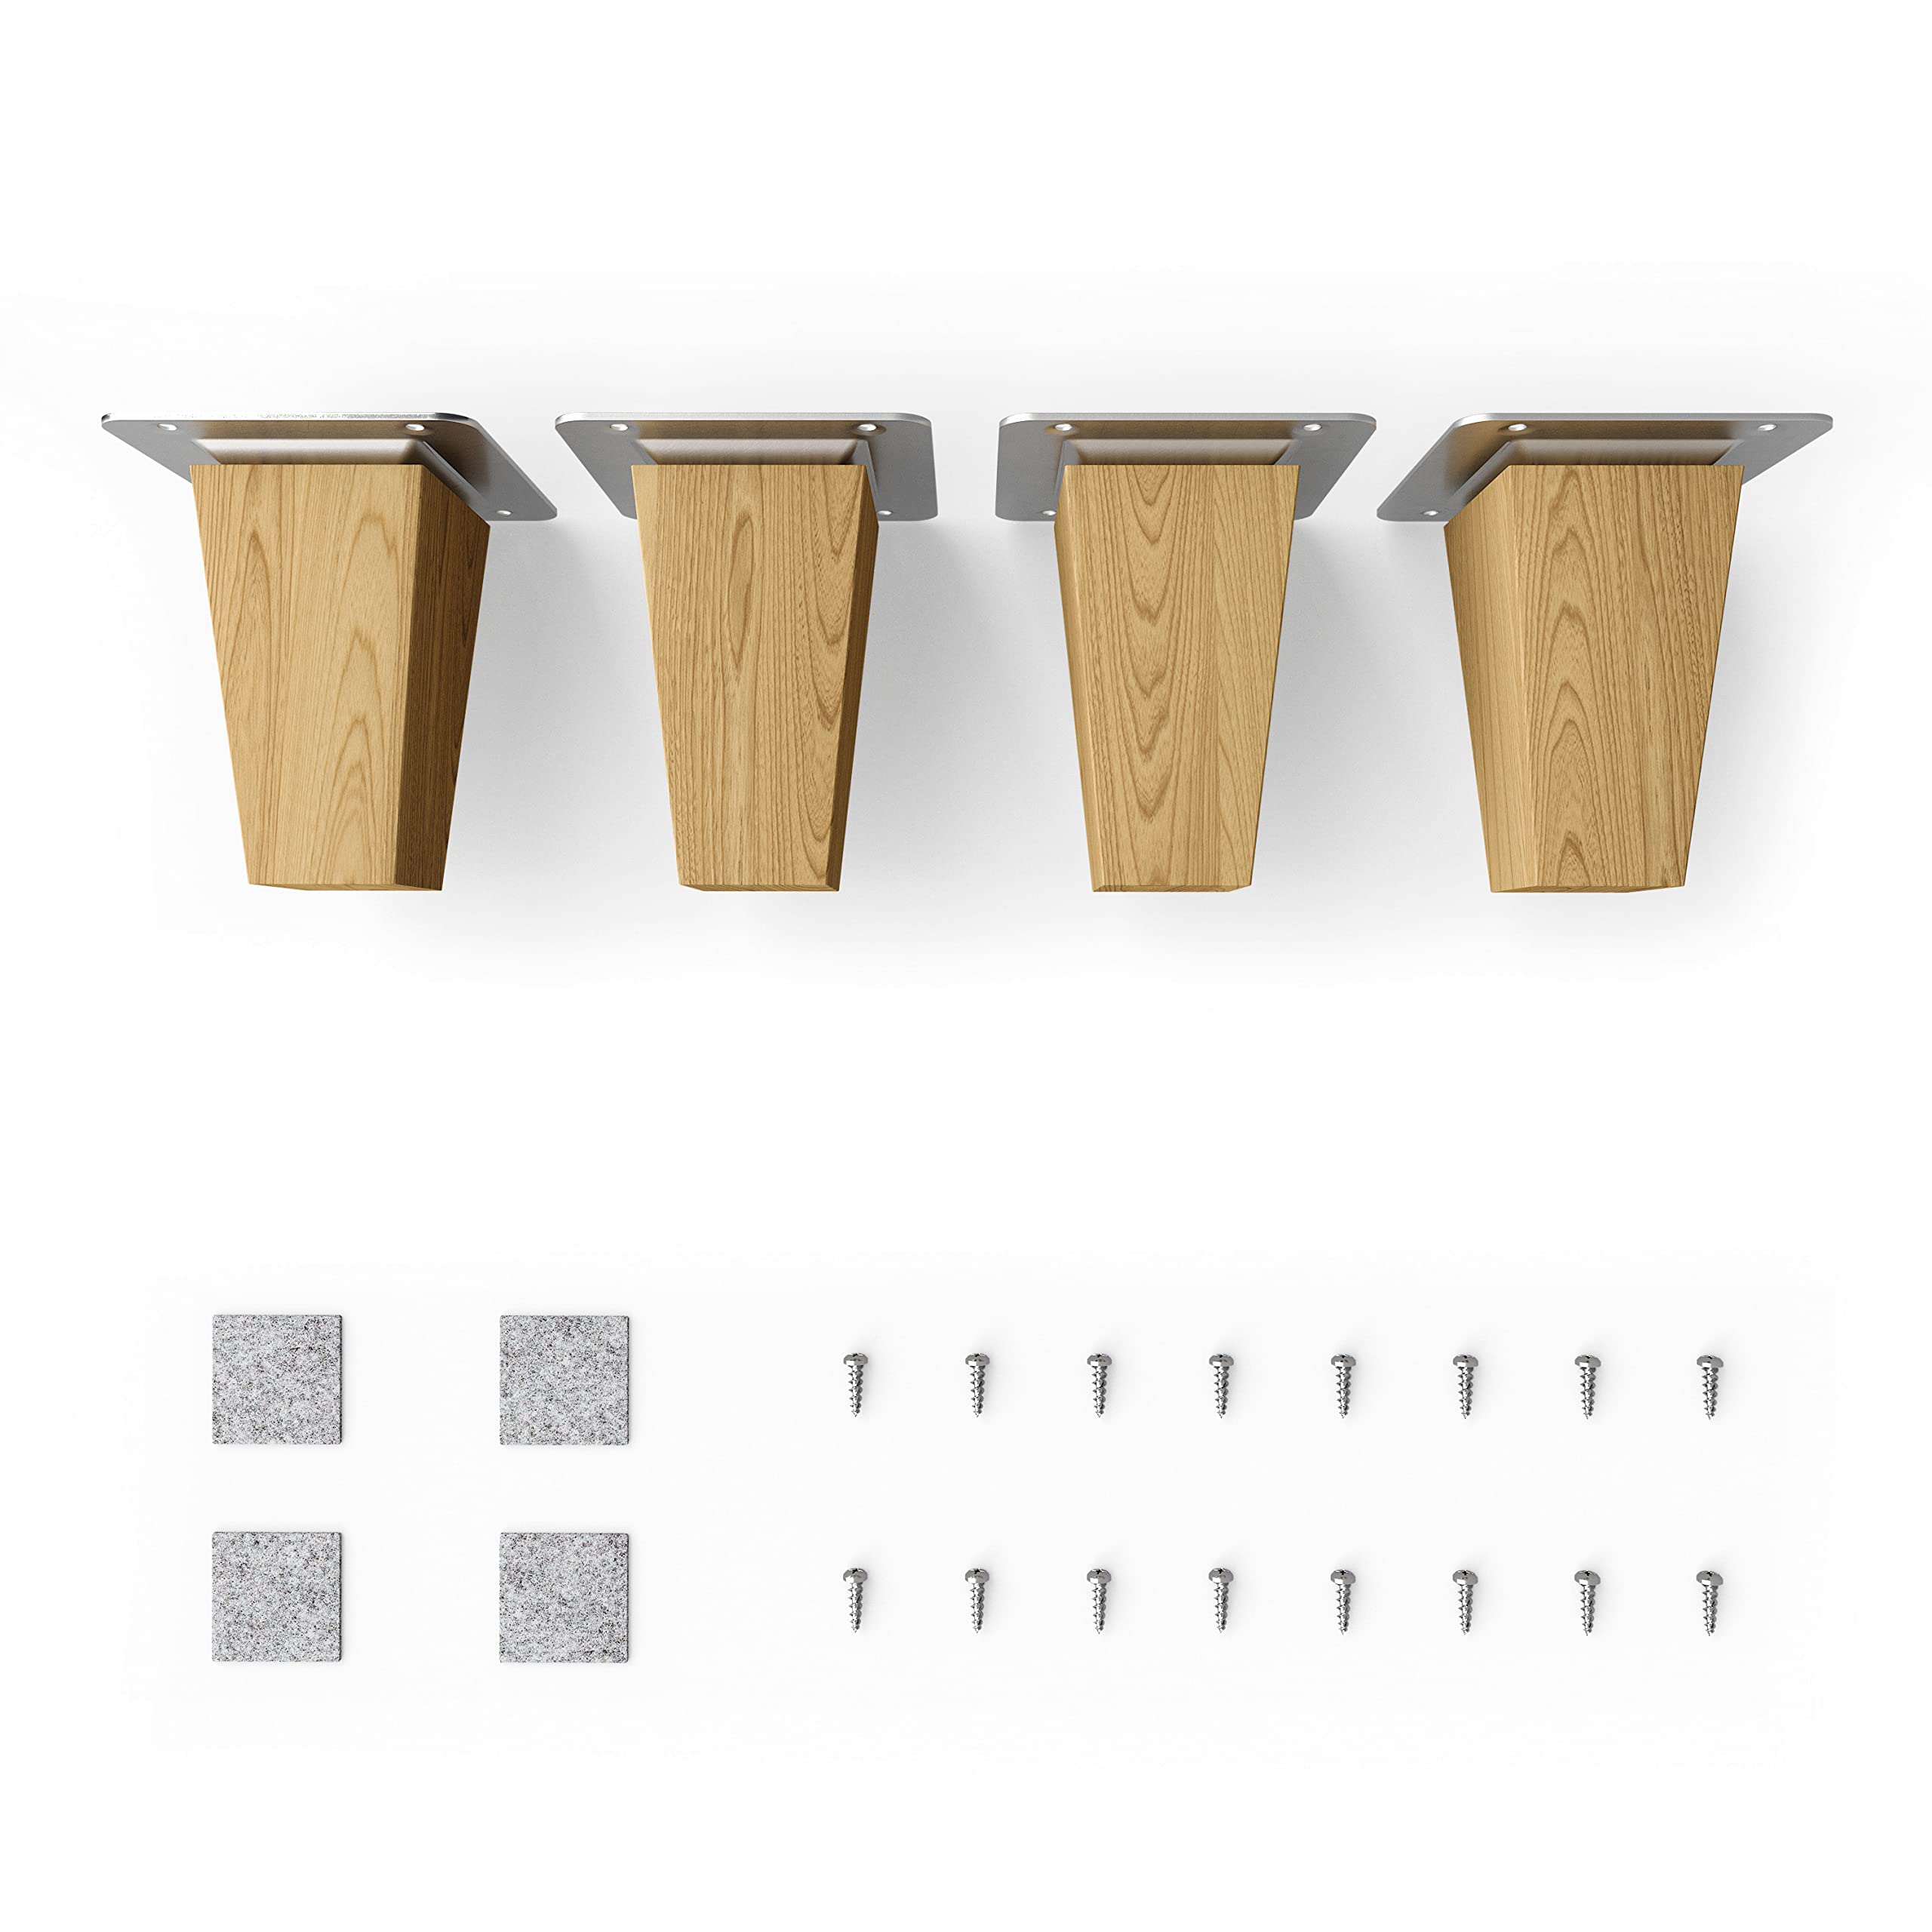 Sossai® Holz-Tischbeine - Clif Square | Öl-Finish | Höhe: 8 cm | HMF3 | eckig, konisch (gerade Ausführung) | Material: Massivholz (Eiche) | für Tische, Beistelltische, Schminktische